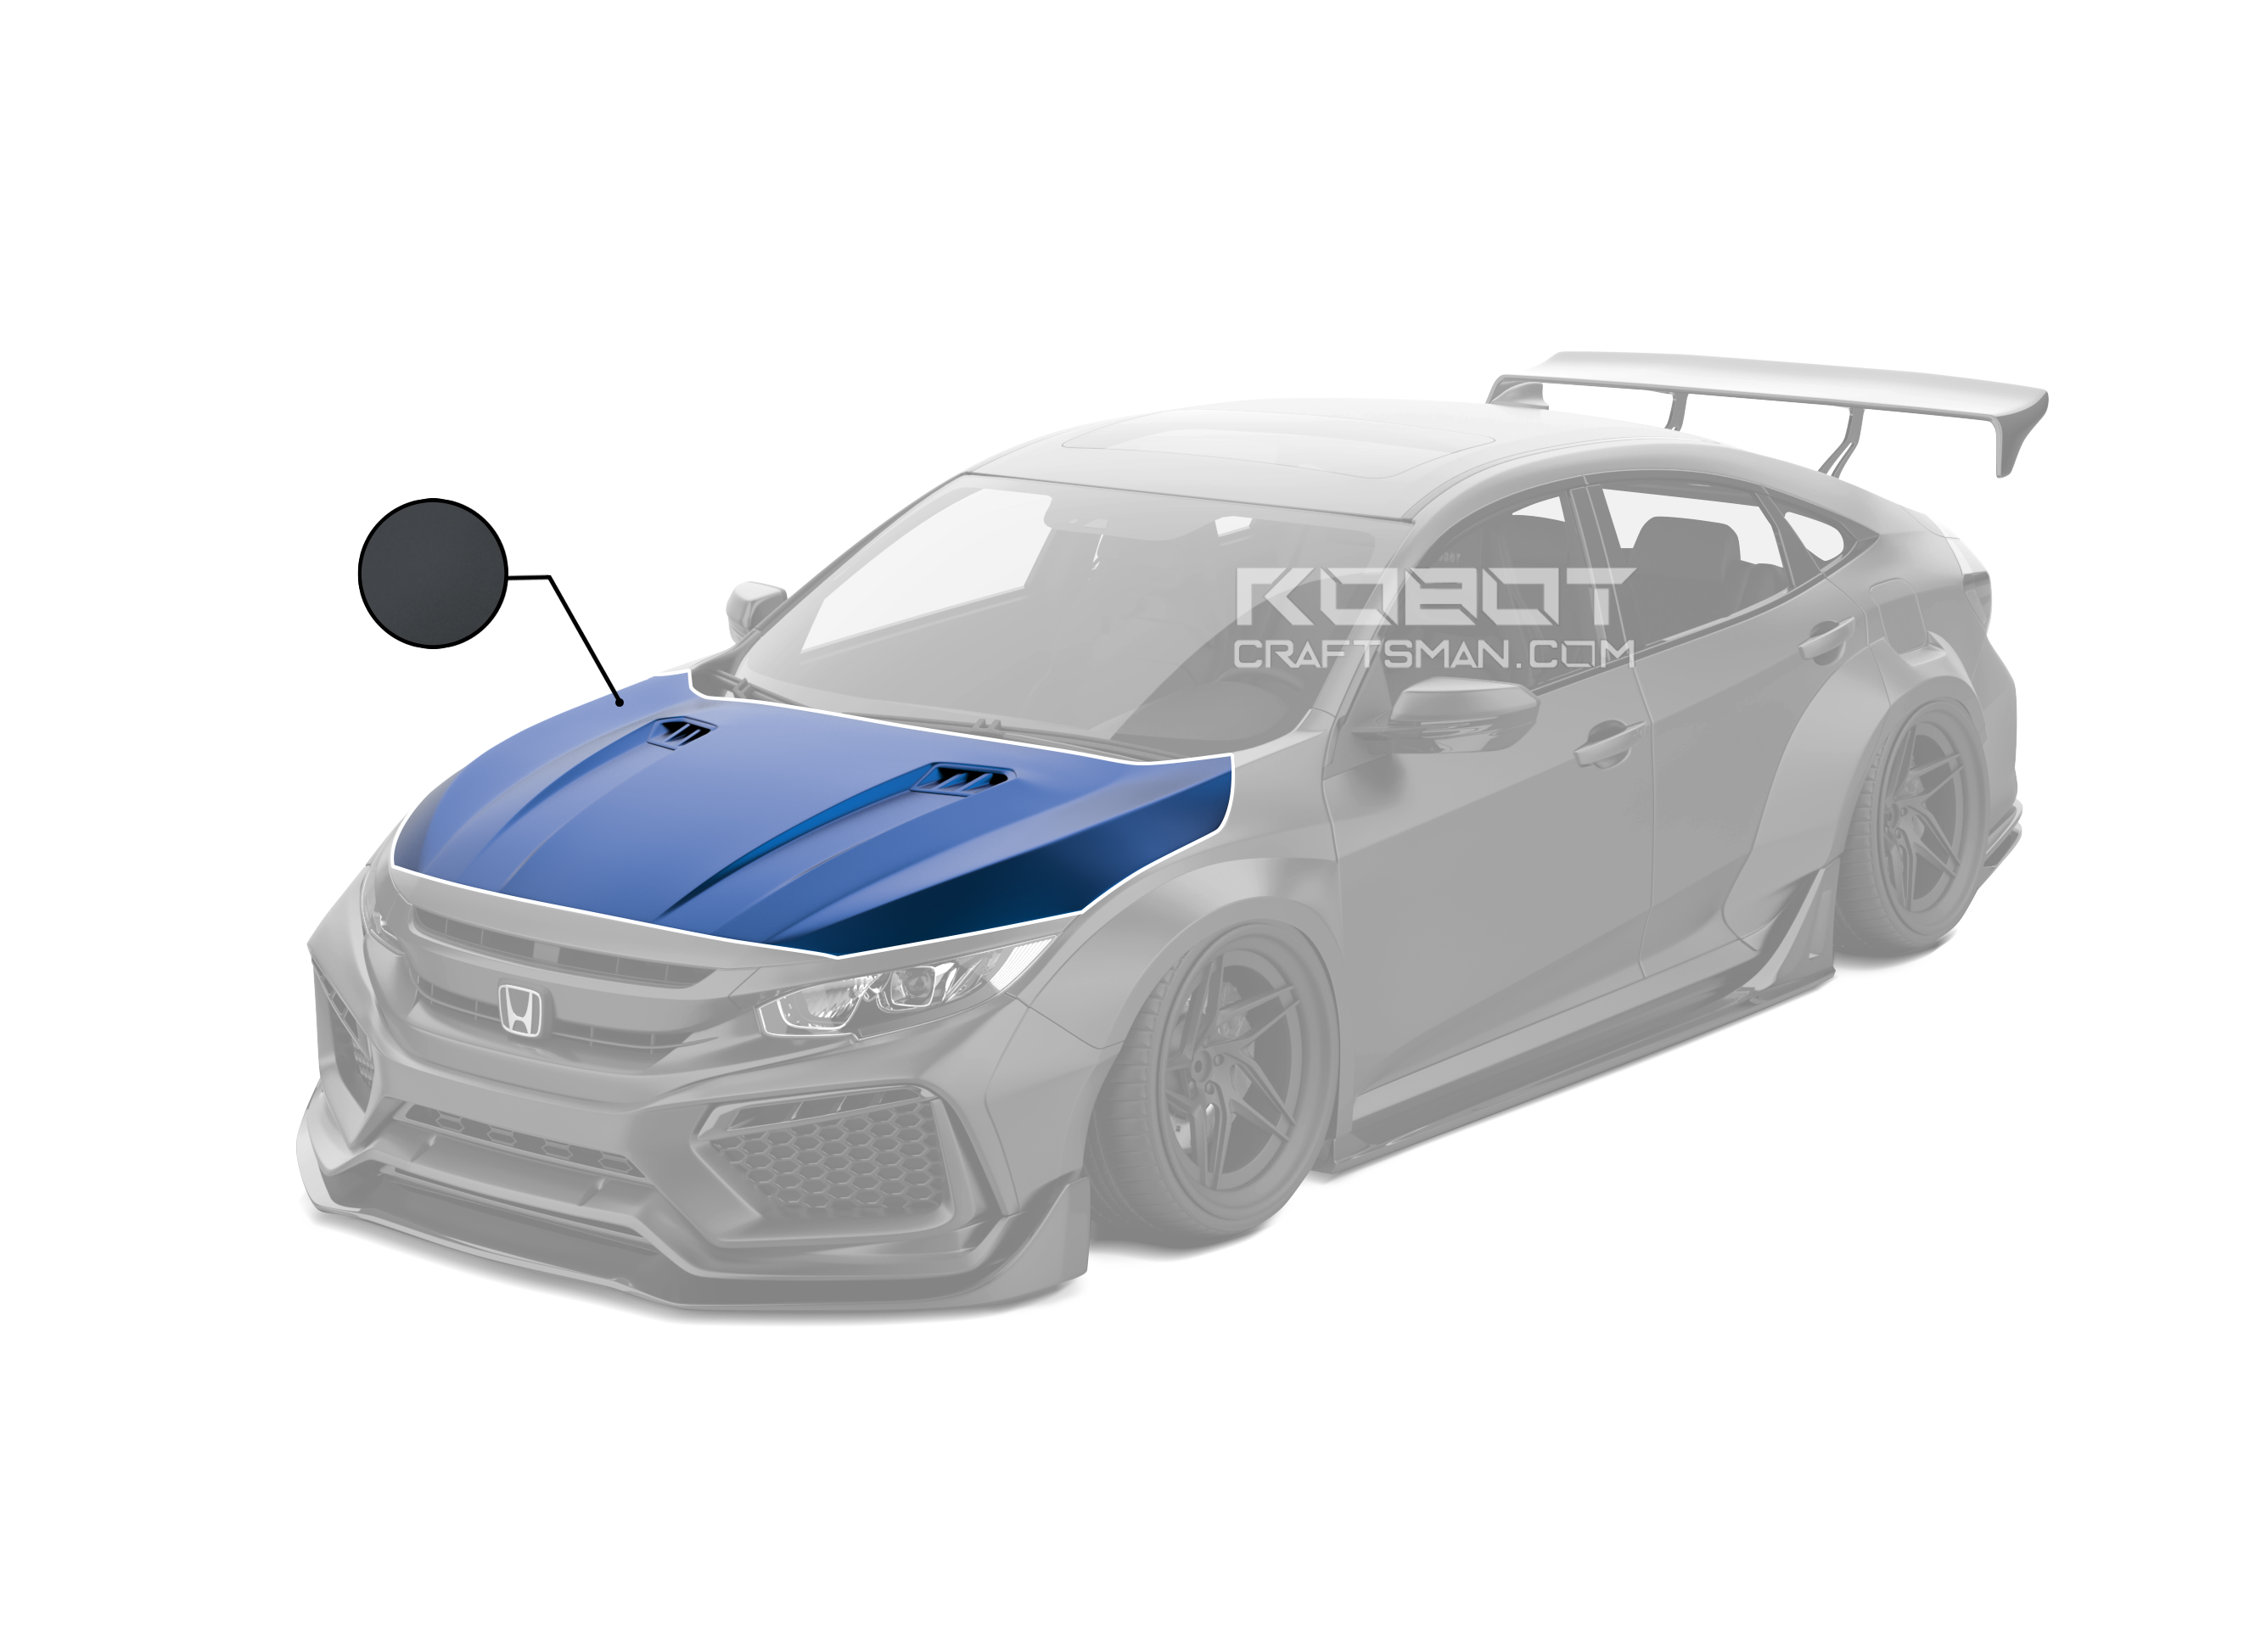 ROBOT CRAFTSMAN Carbon Fiber Hood Bonnet For Honda Civic 10th Gen Sedan Coupe SI FK7 Hatchback